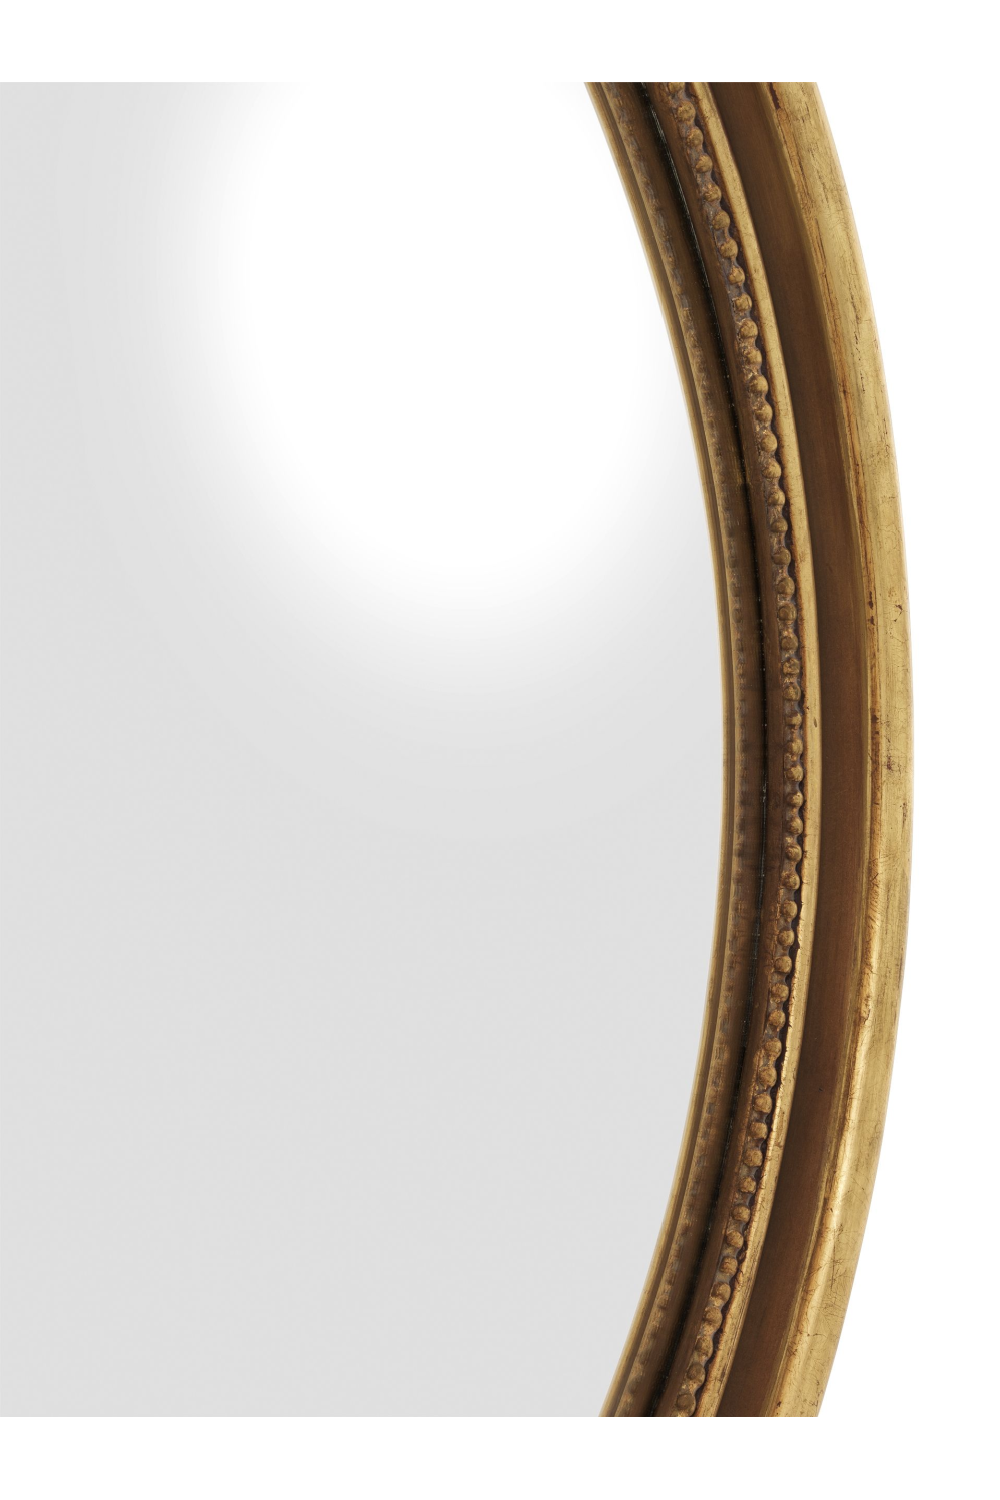 Round Gold Mirror | Eichholtz Verso | OROA